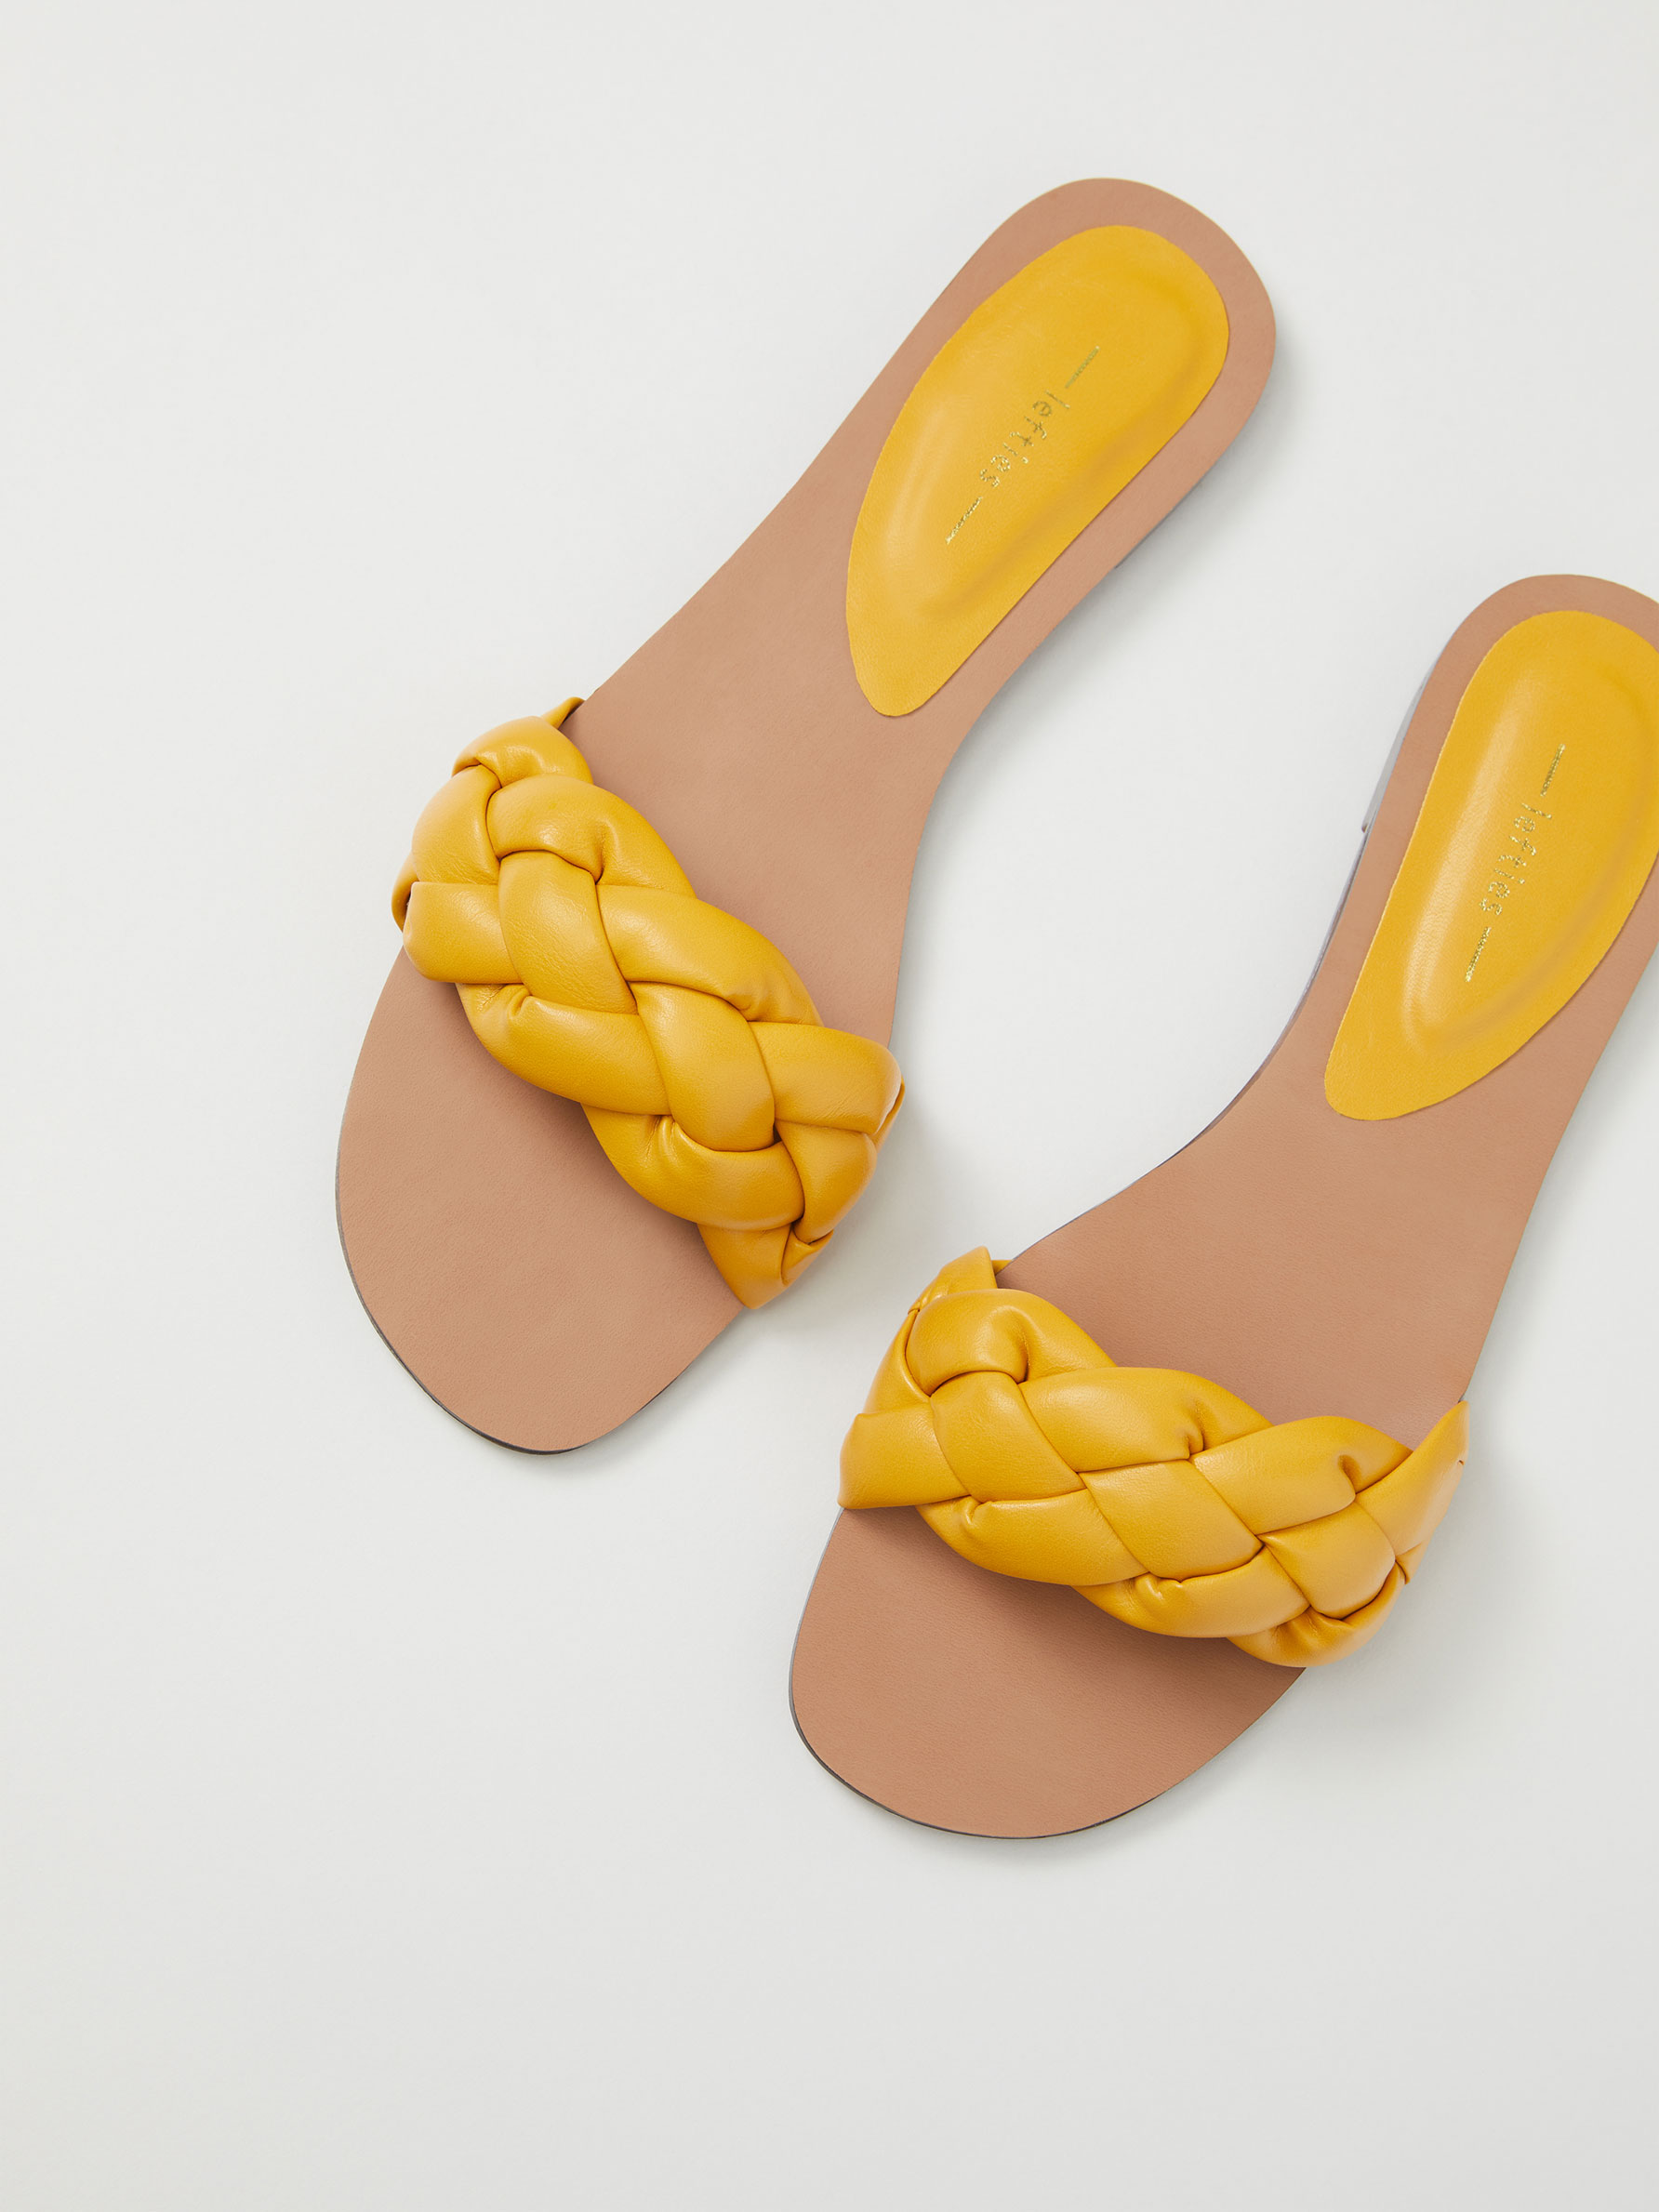 Las 6 sandalias planas más cómodas, bonitas del verano